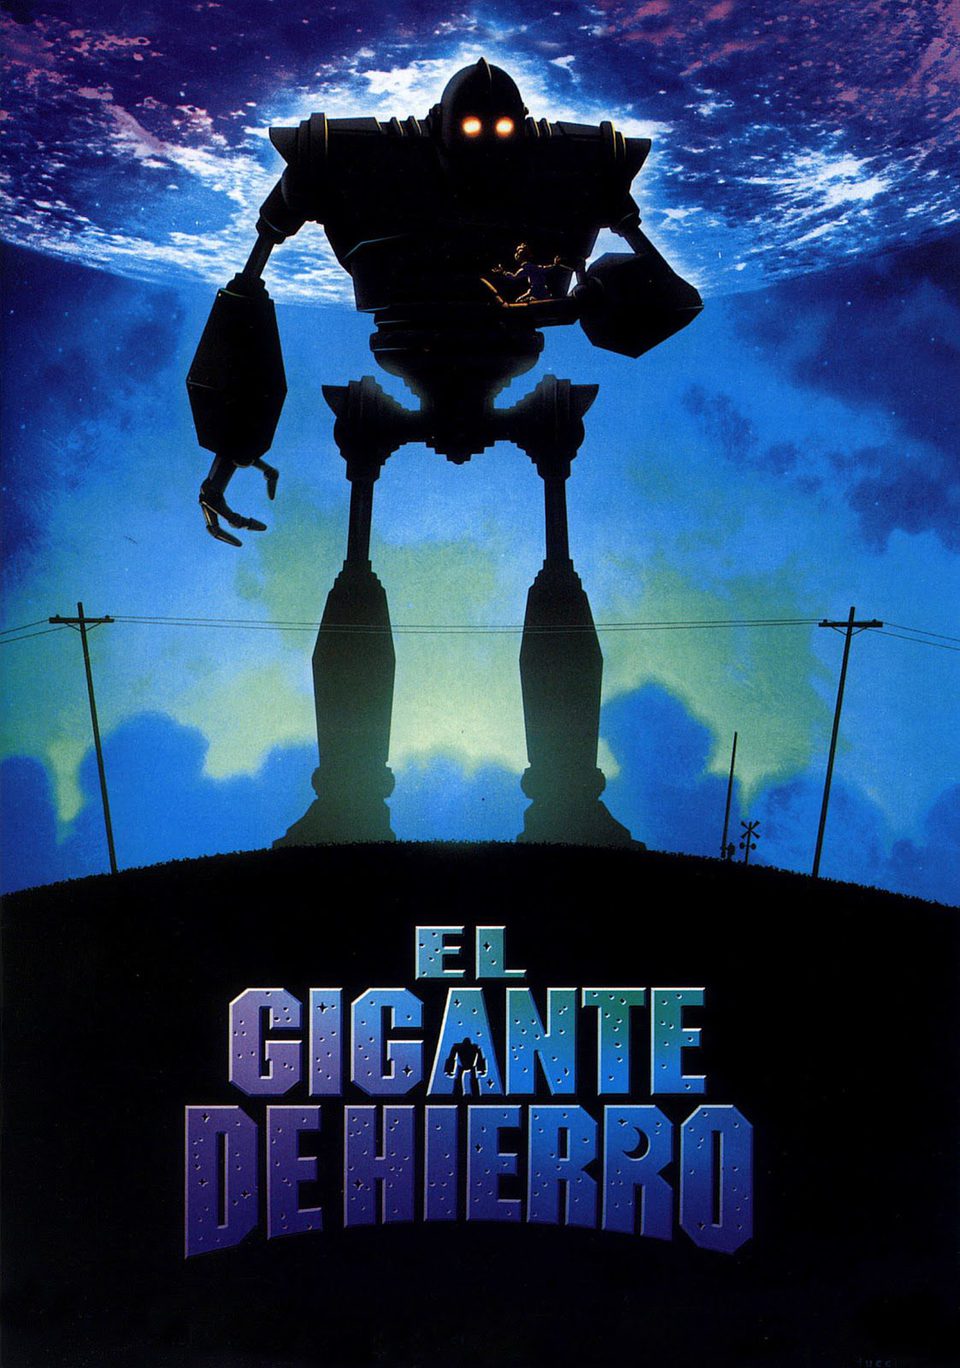 Poster of The Iron Giant - España